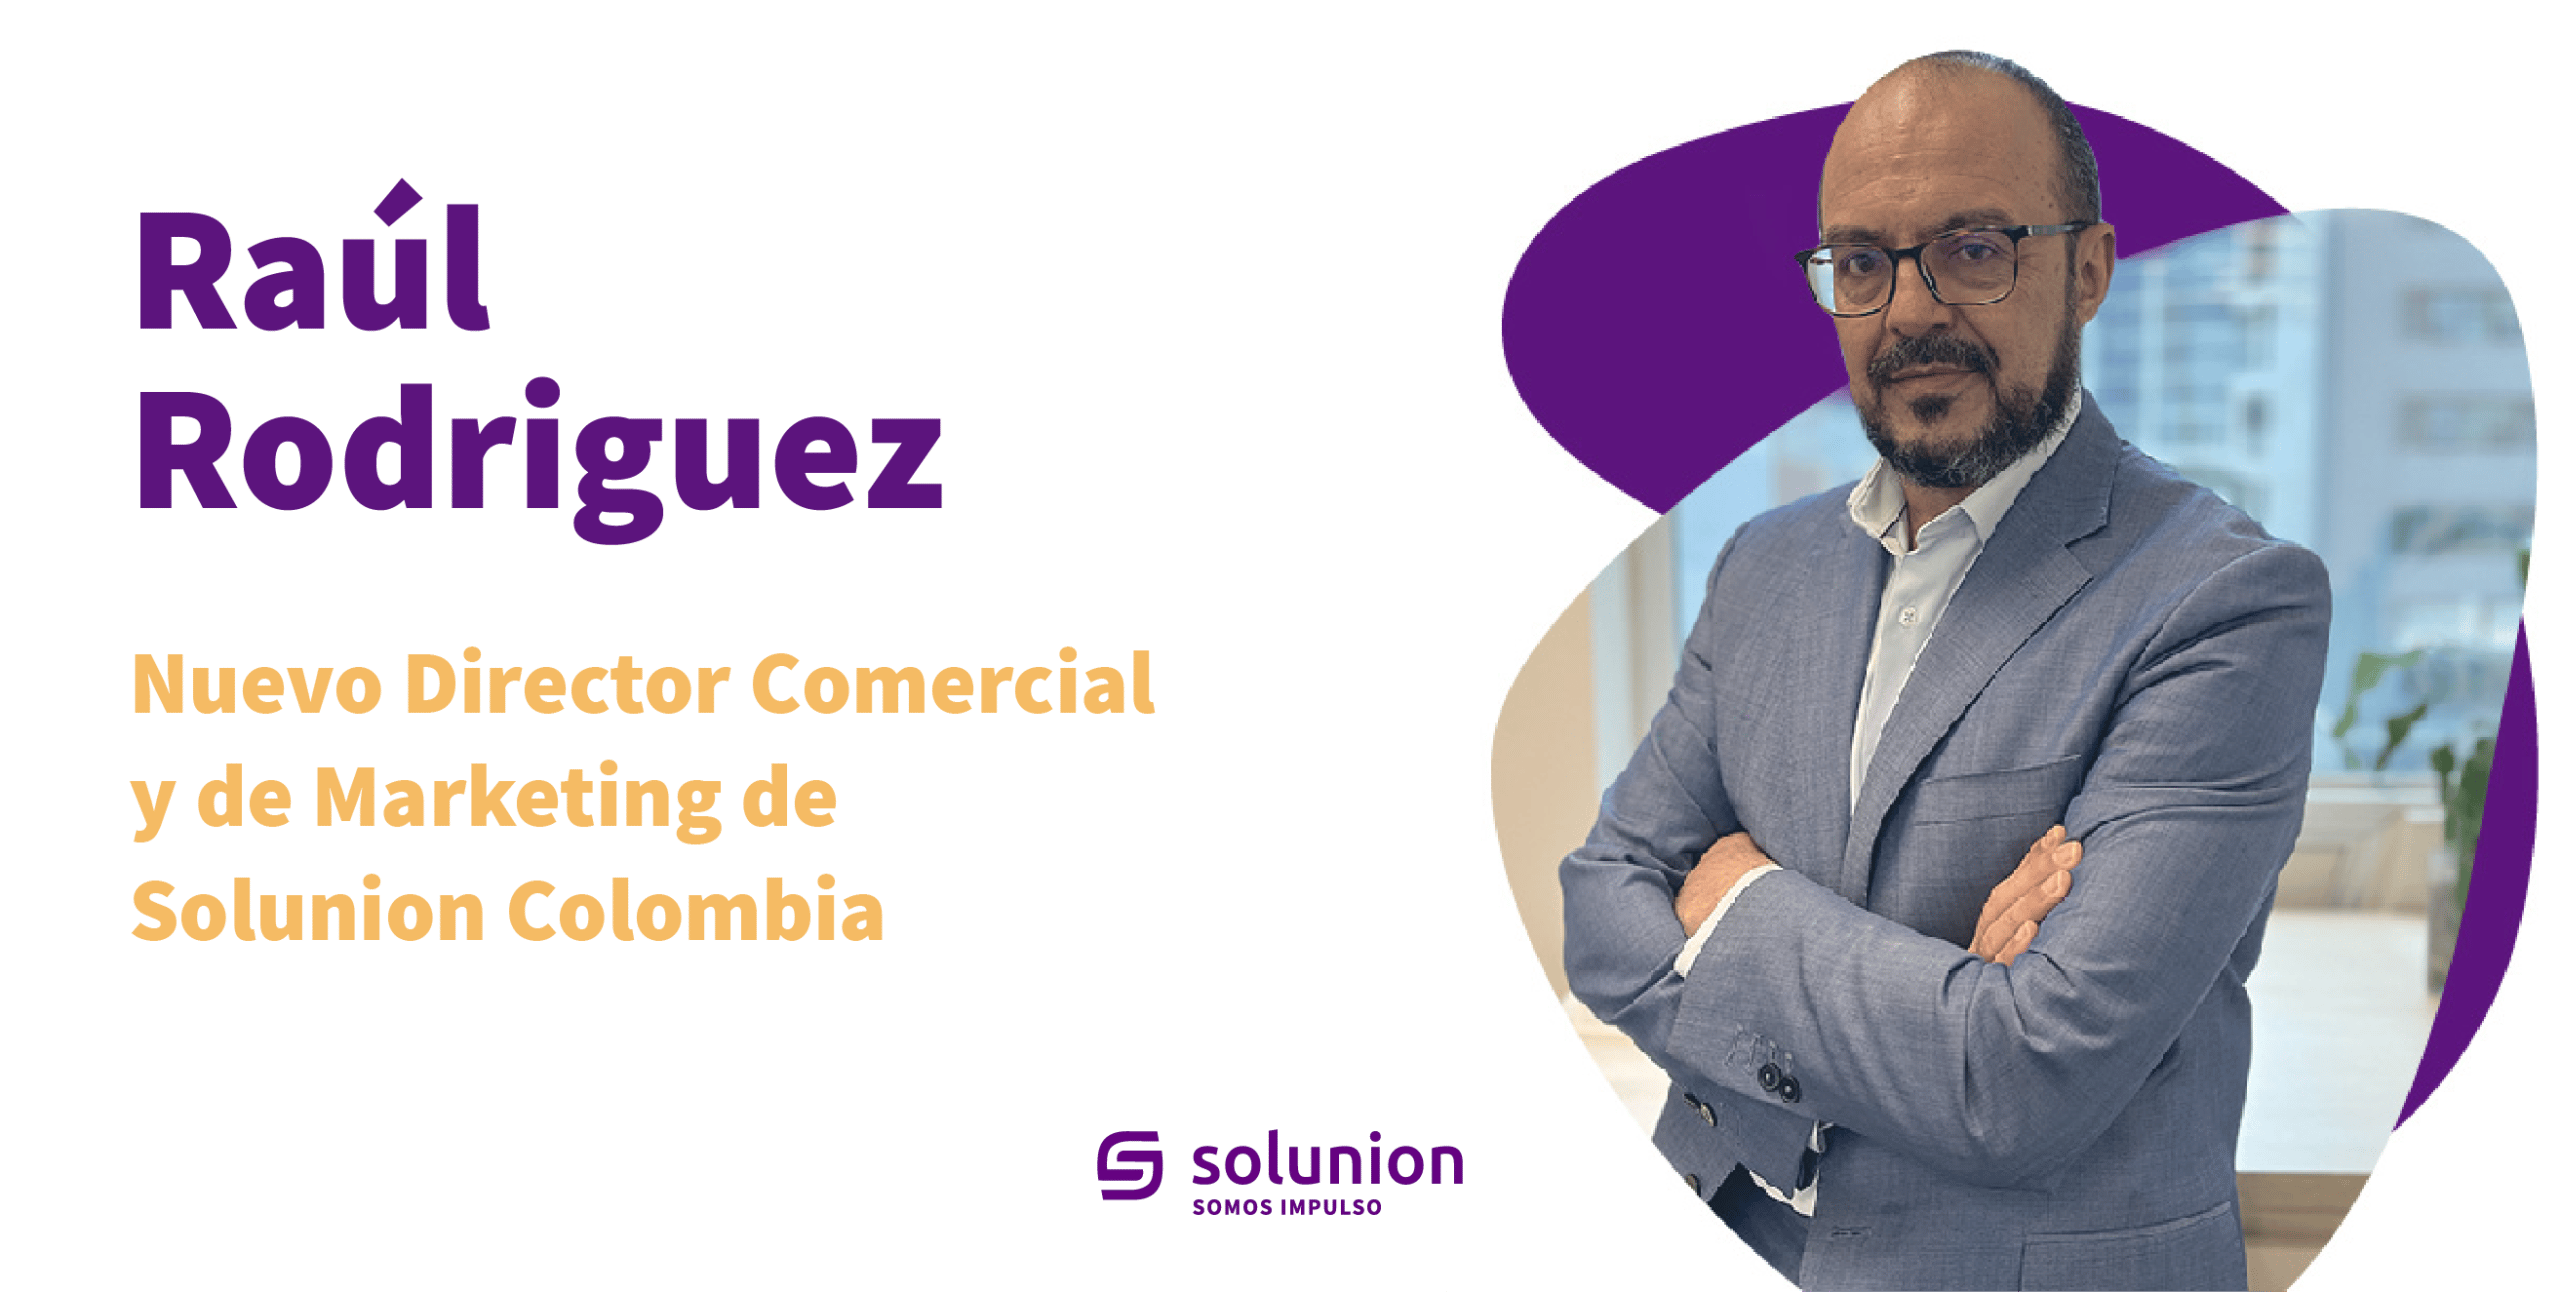 Raúl Rodríguez, nuevo Director Comercial y de Marketing de Solunion Colombia